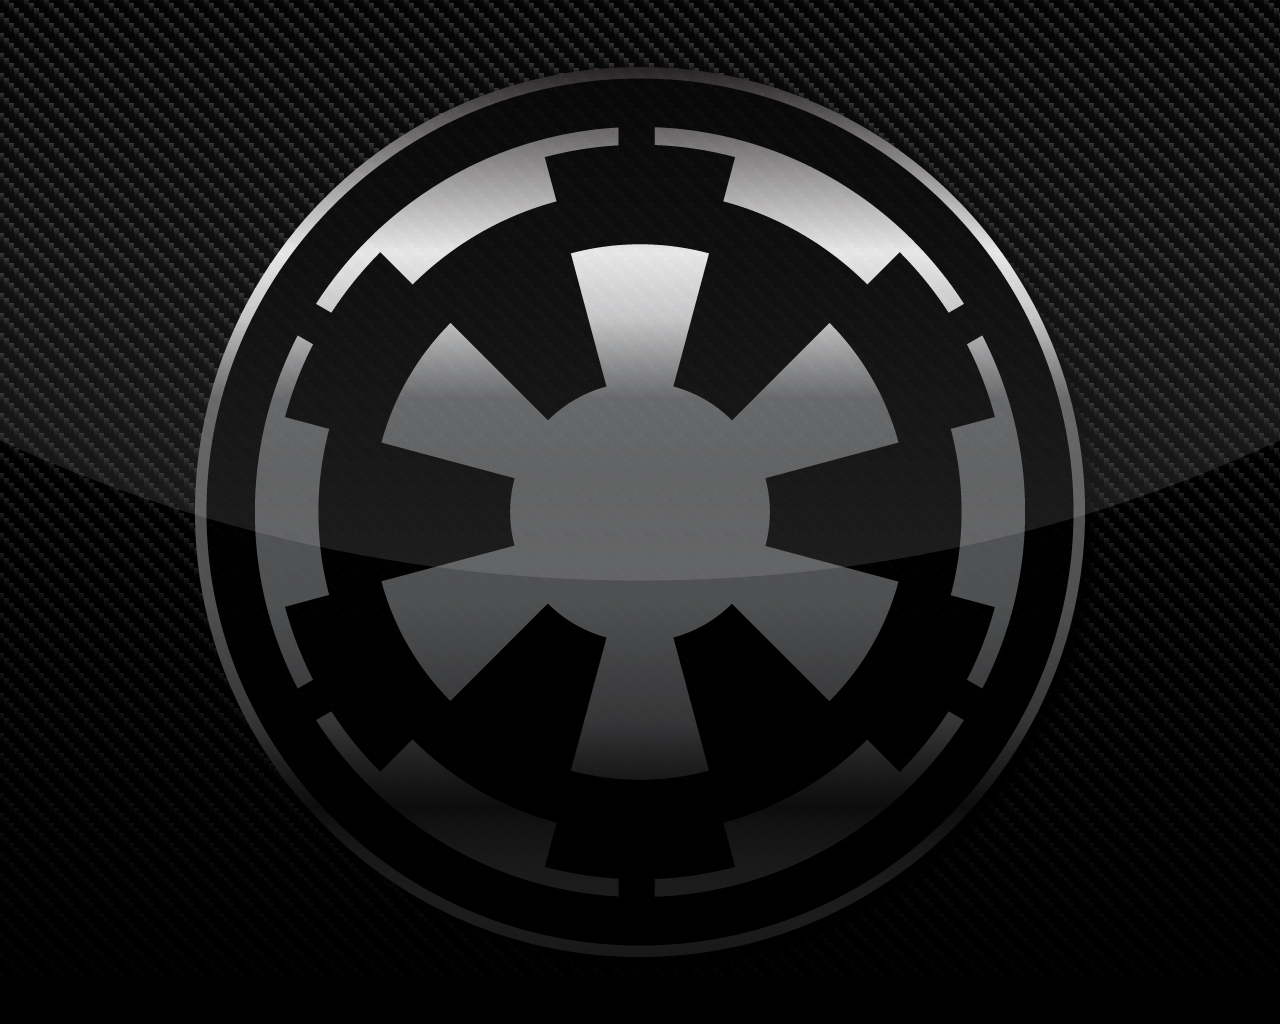 Star wars empire Logos